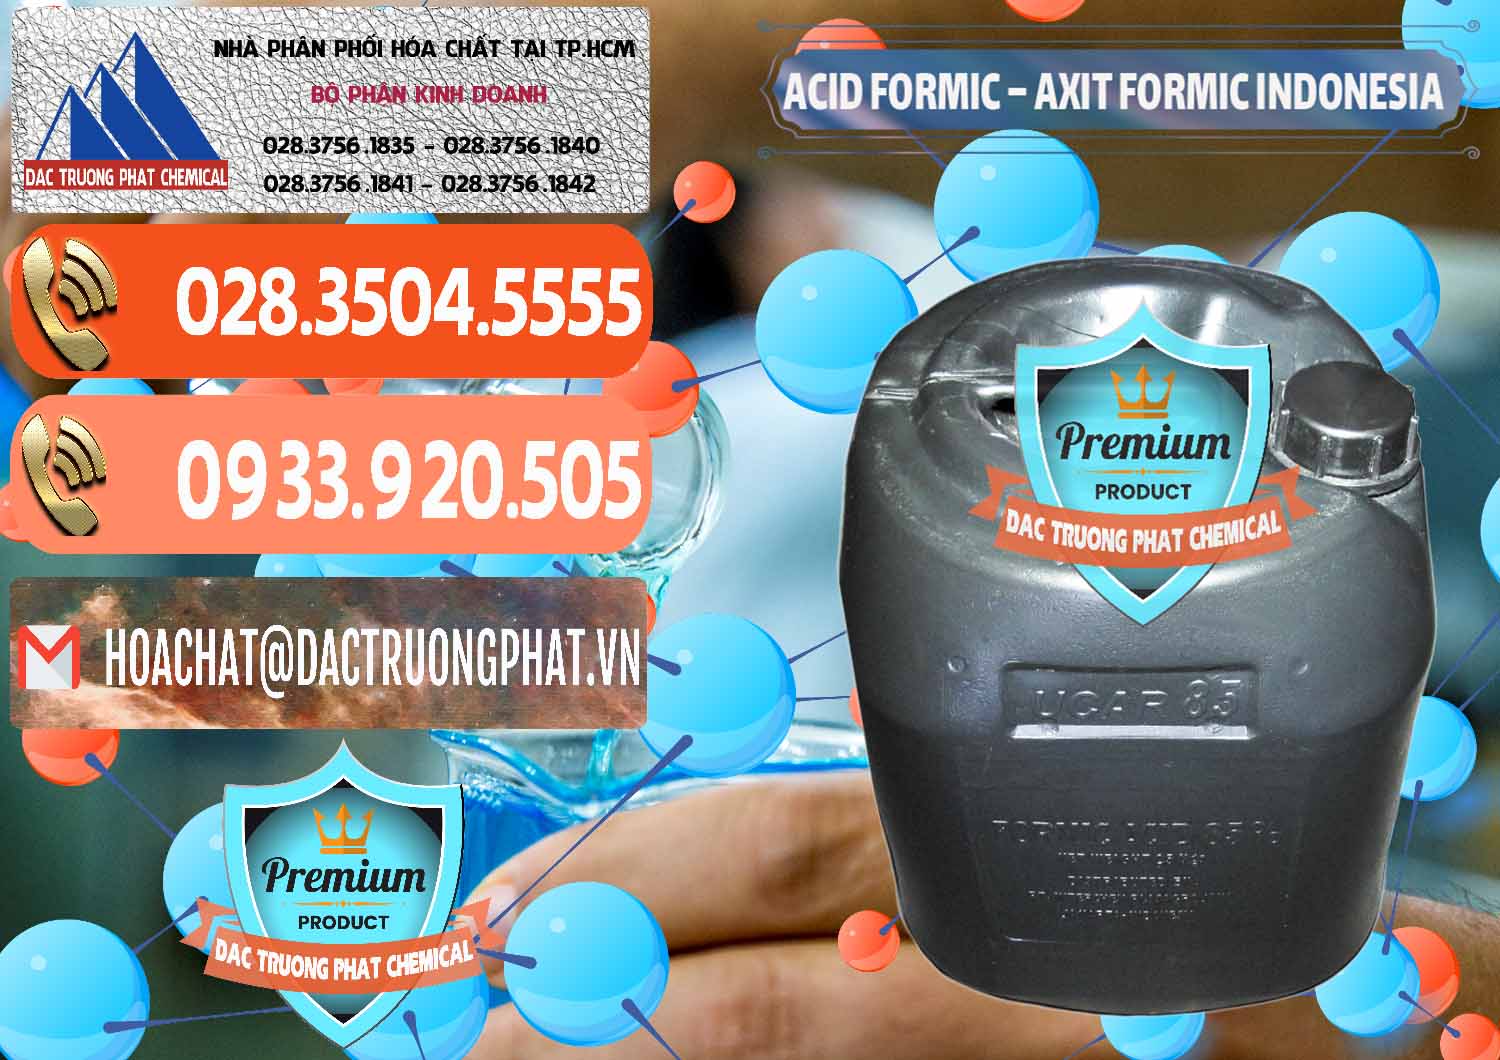 Cty chuyên cung cấp _ bán Acid Formic - Axit Formic Indonesia - 0026 - Nhà cung cấp - nhập khẩu hóa chất tại TP.HCM - hoachatmientay.com